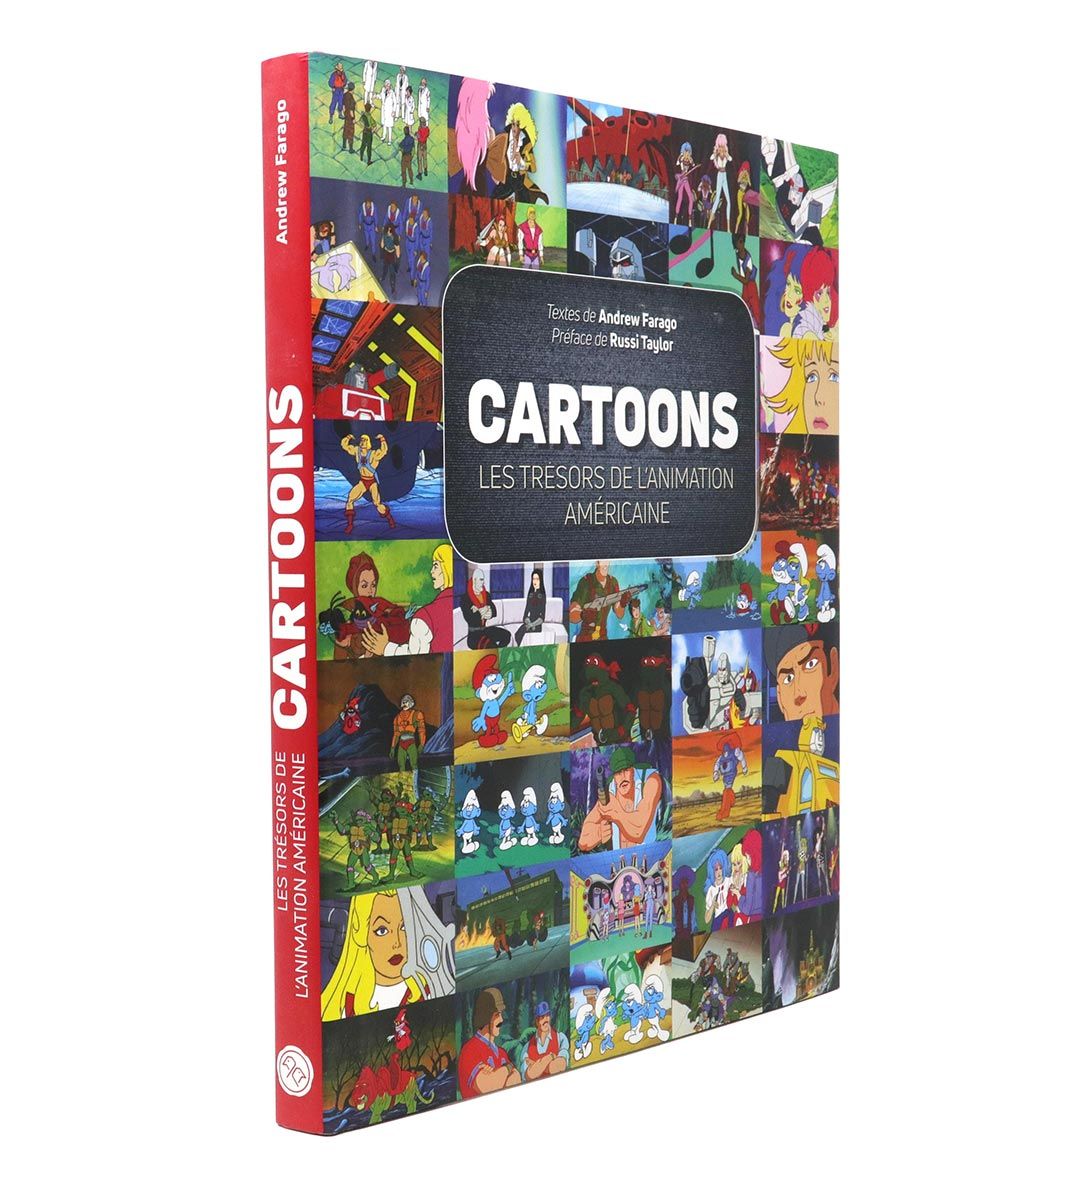 Cartoons, les trésors de l’animation américaine